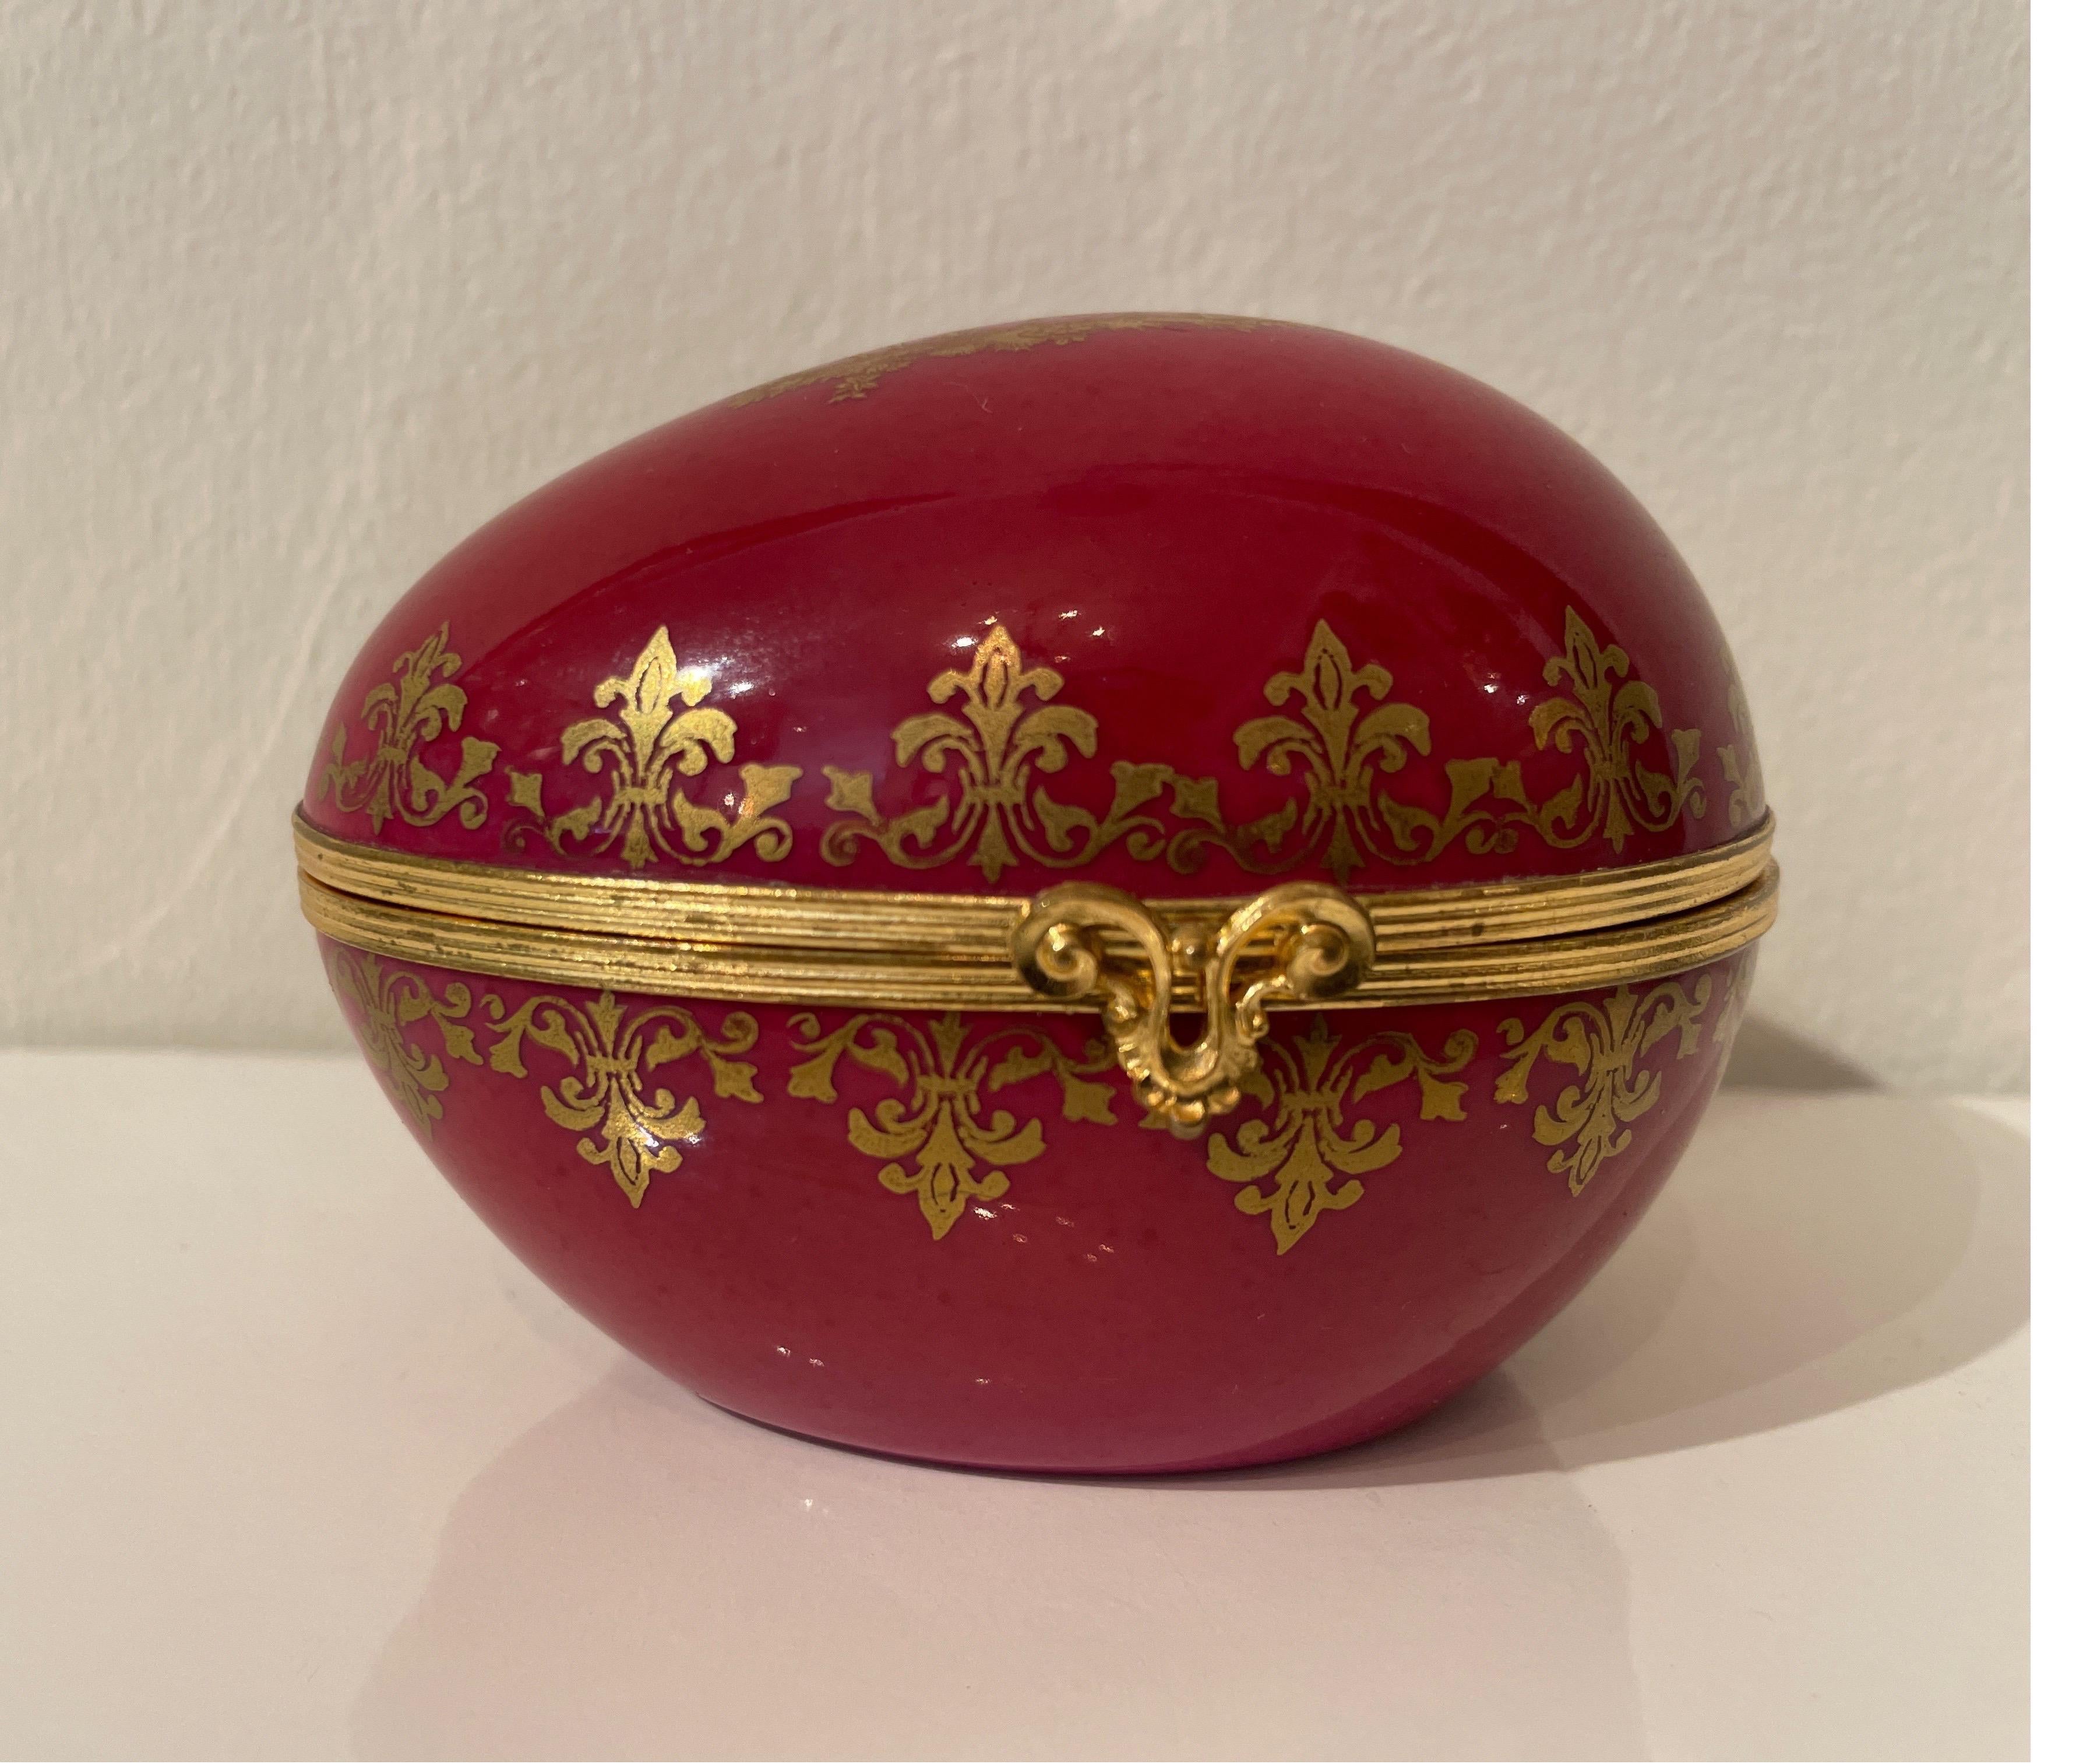 Große handbemalte Limoges-Porzellandose in Form eines Eies. Mit vergoldeter Bronze verziert. Das Ei ist in einem kräftigen Burgunderrot mit goldenen Akzenten gehalten.